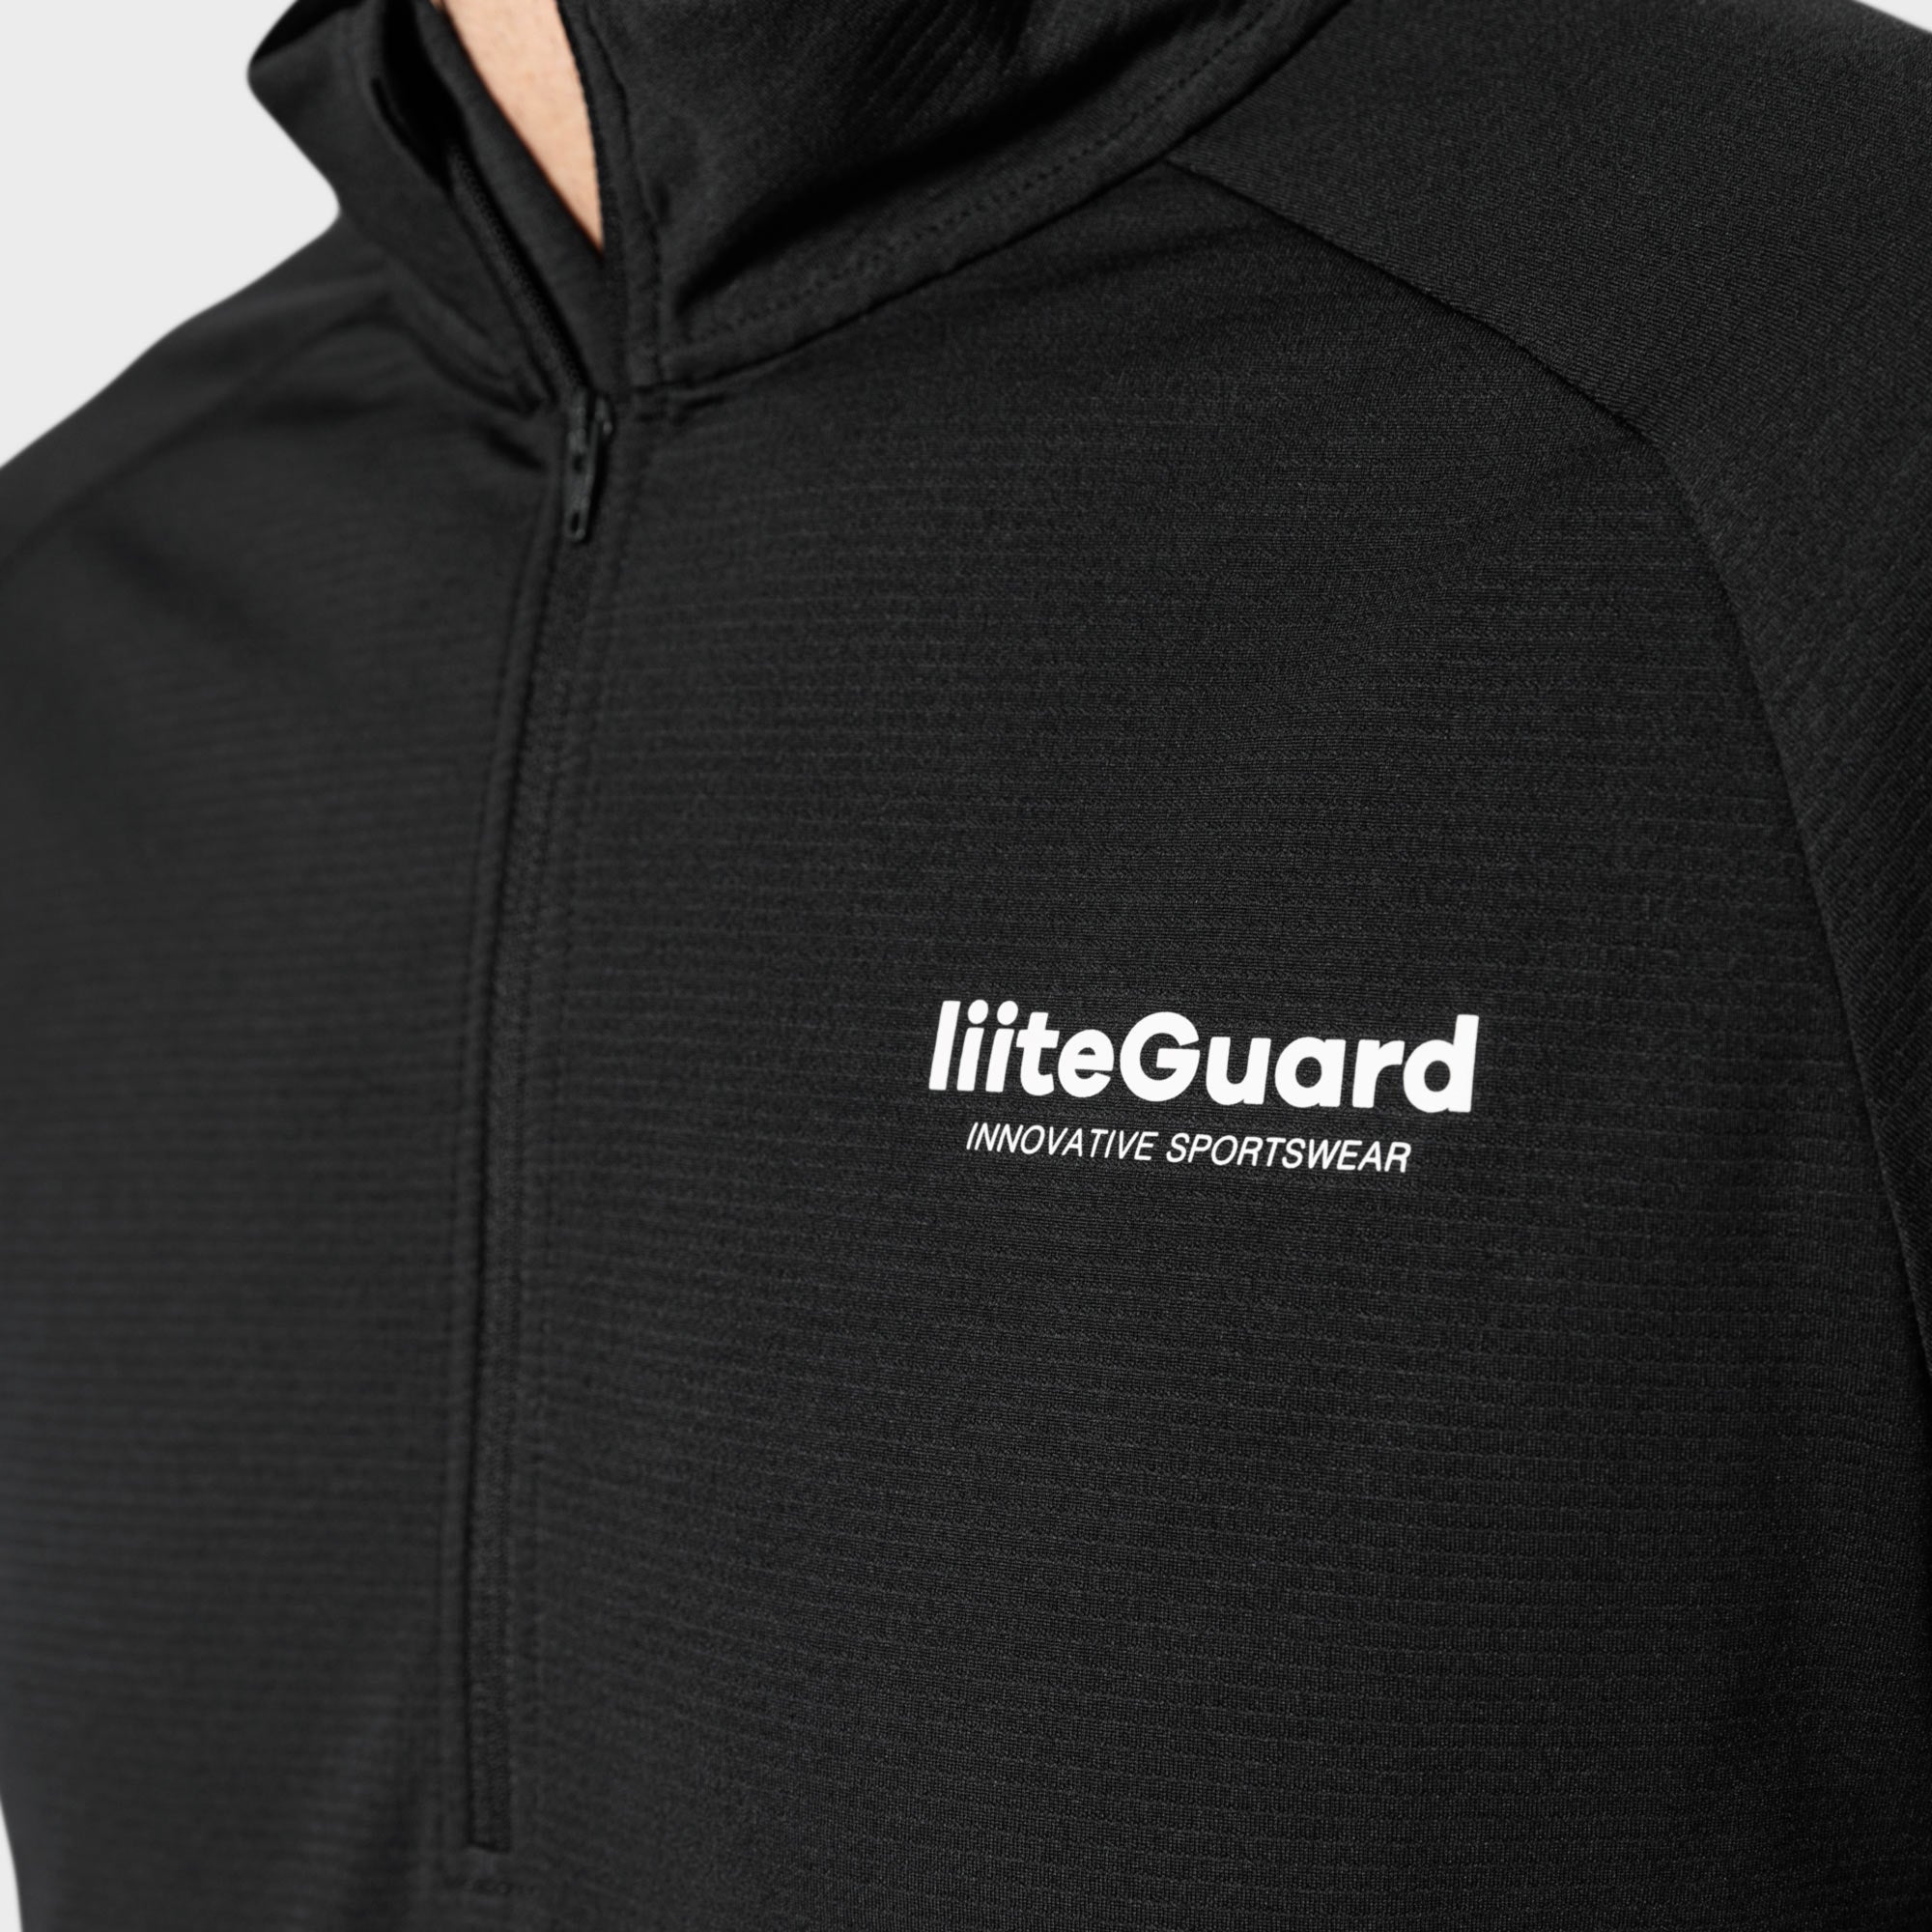 Liiteguard GROUND-TECH 1/4 ZIP SHIRT (MEN) Zippers Black